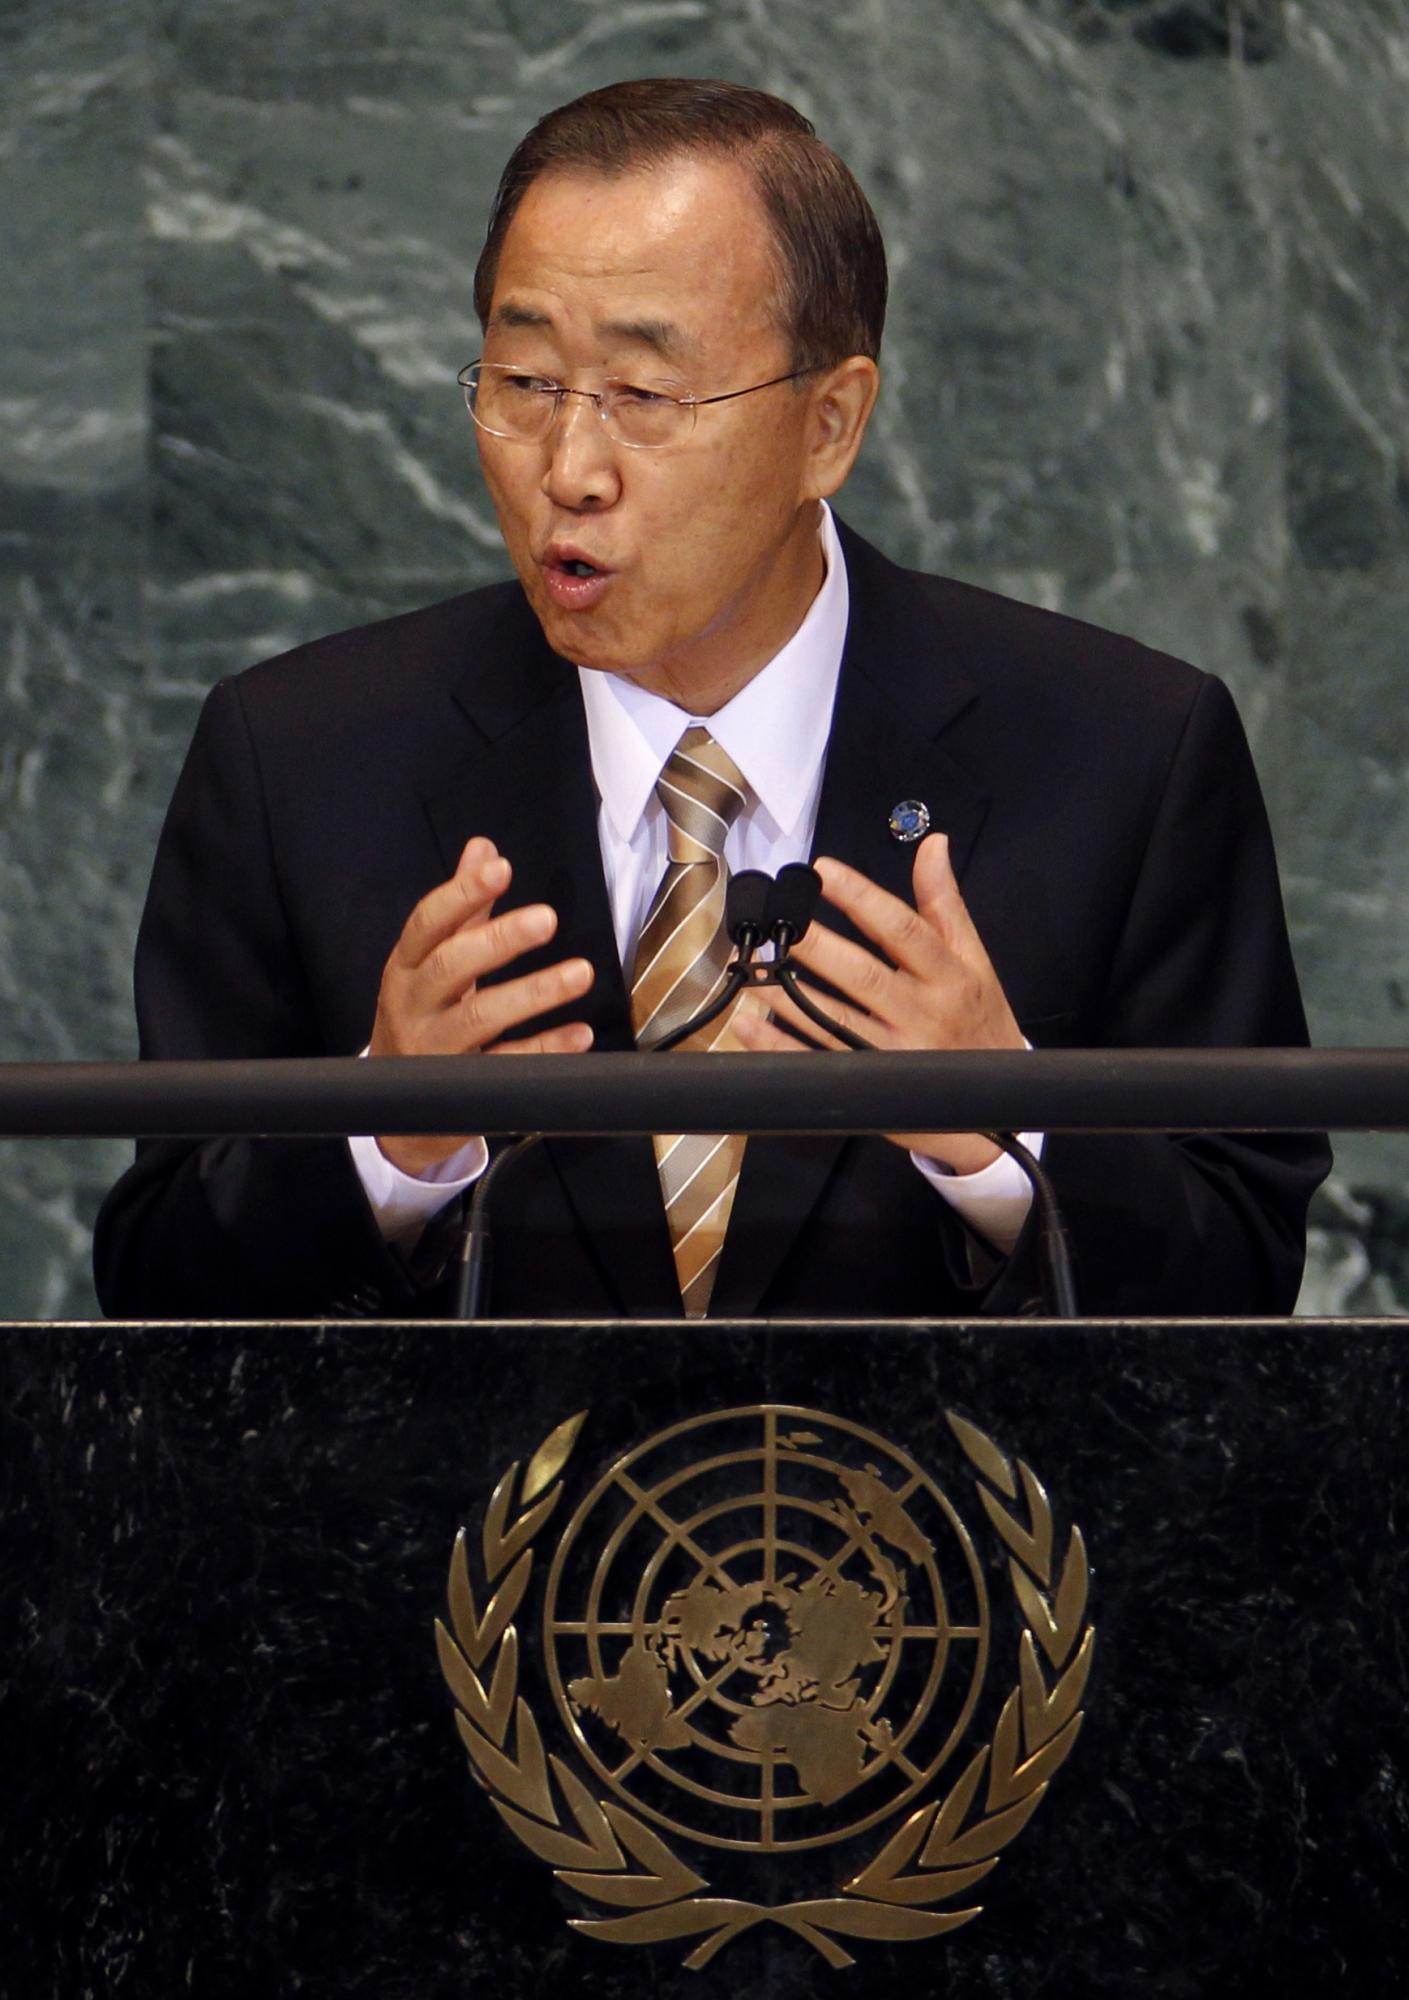 潘基文连任联合国秘书长 勤勉努力坦言并非“完人”